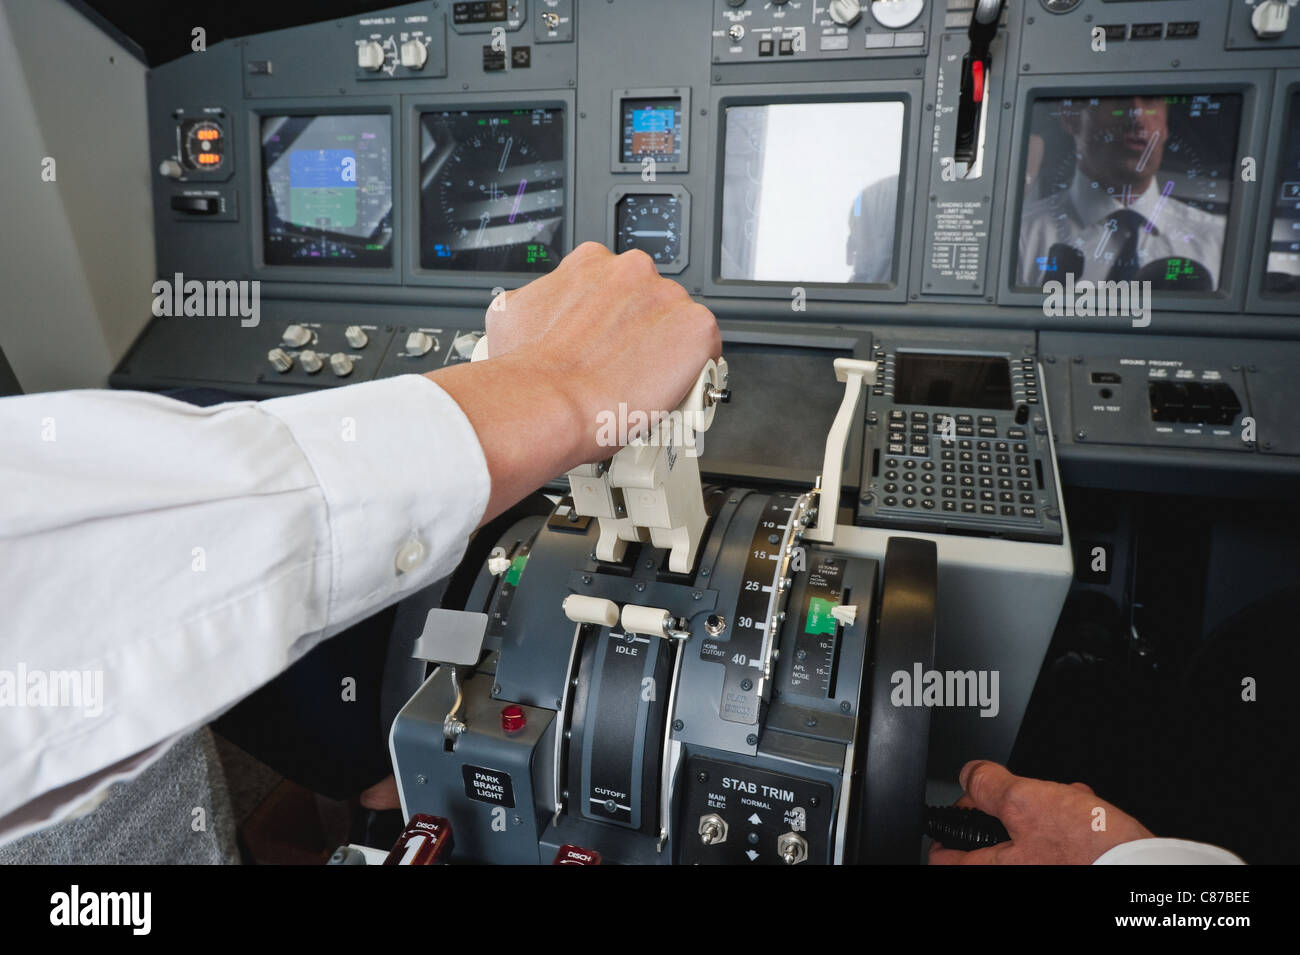 Deutschland, Bayern, München, Hände von Pilot und Kopilot Pilotierung Flugzeug aus Flugzeug-cockpit Stockfoto